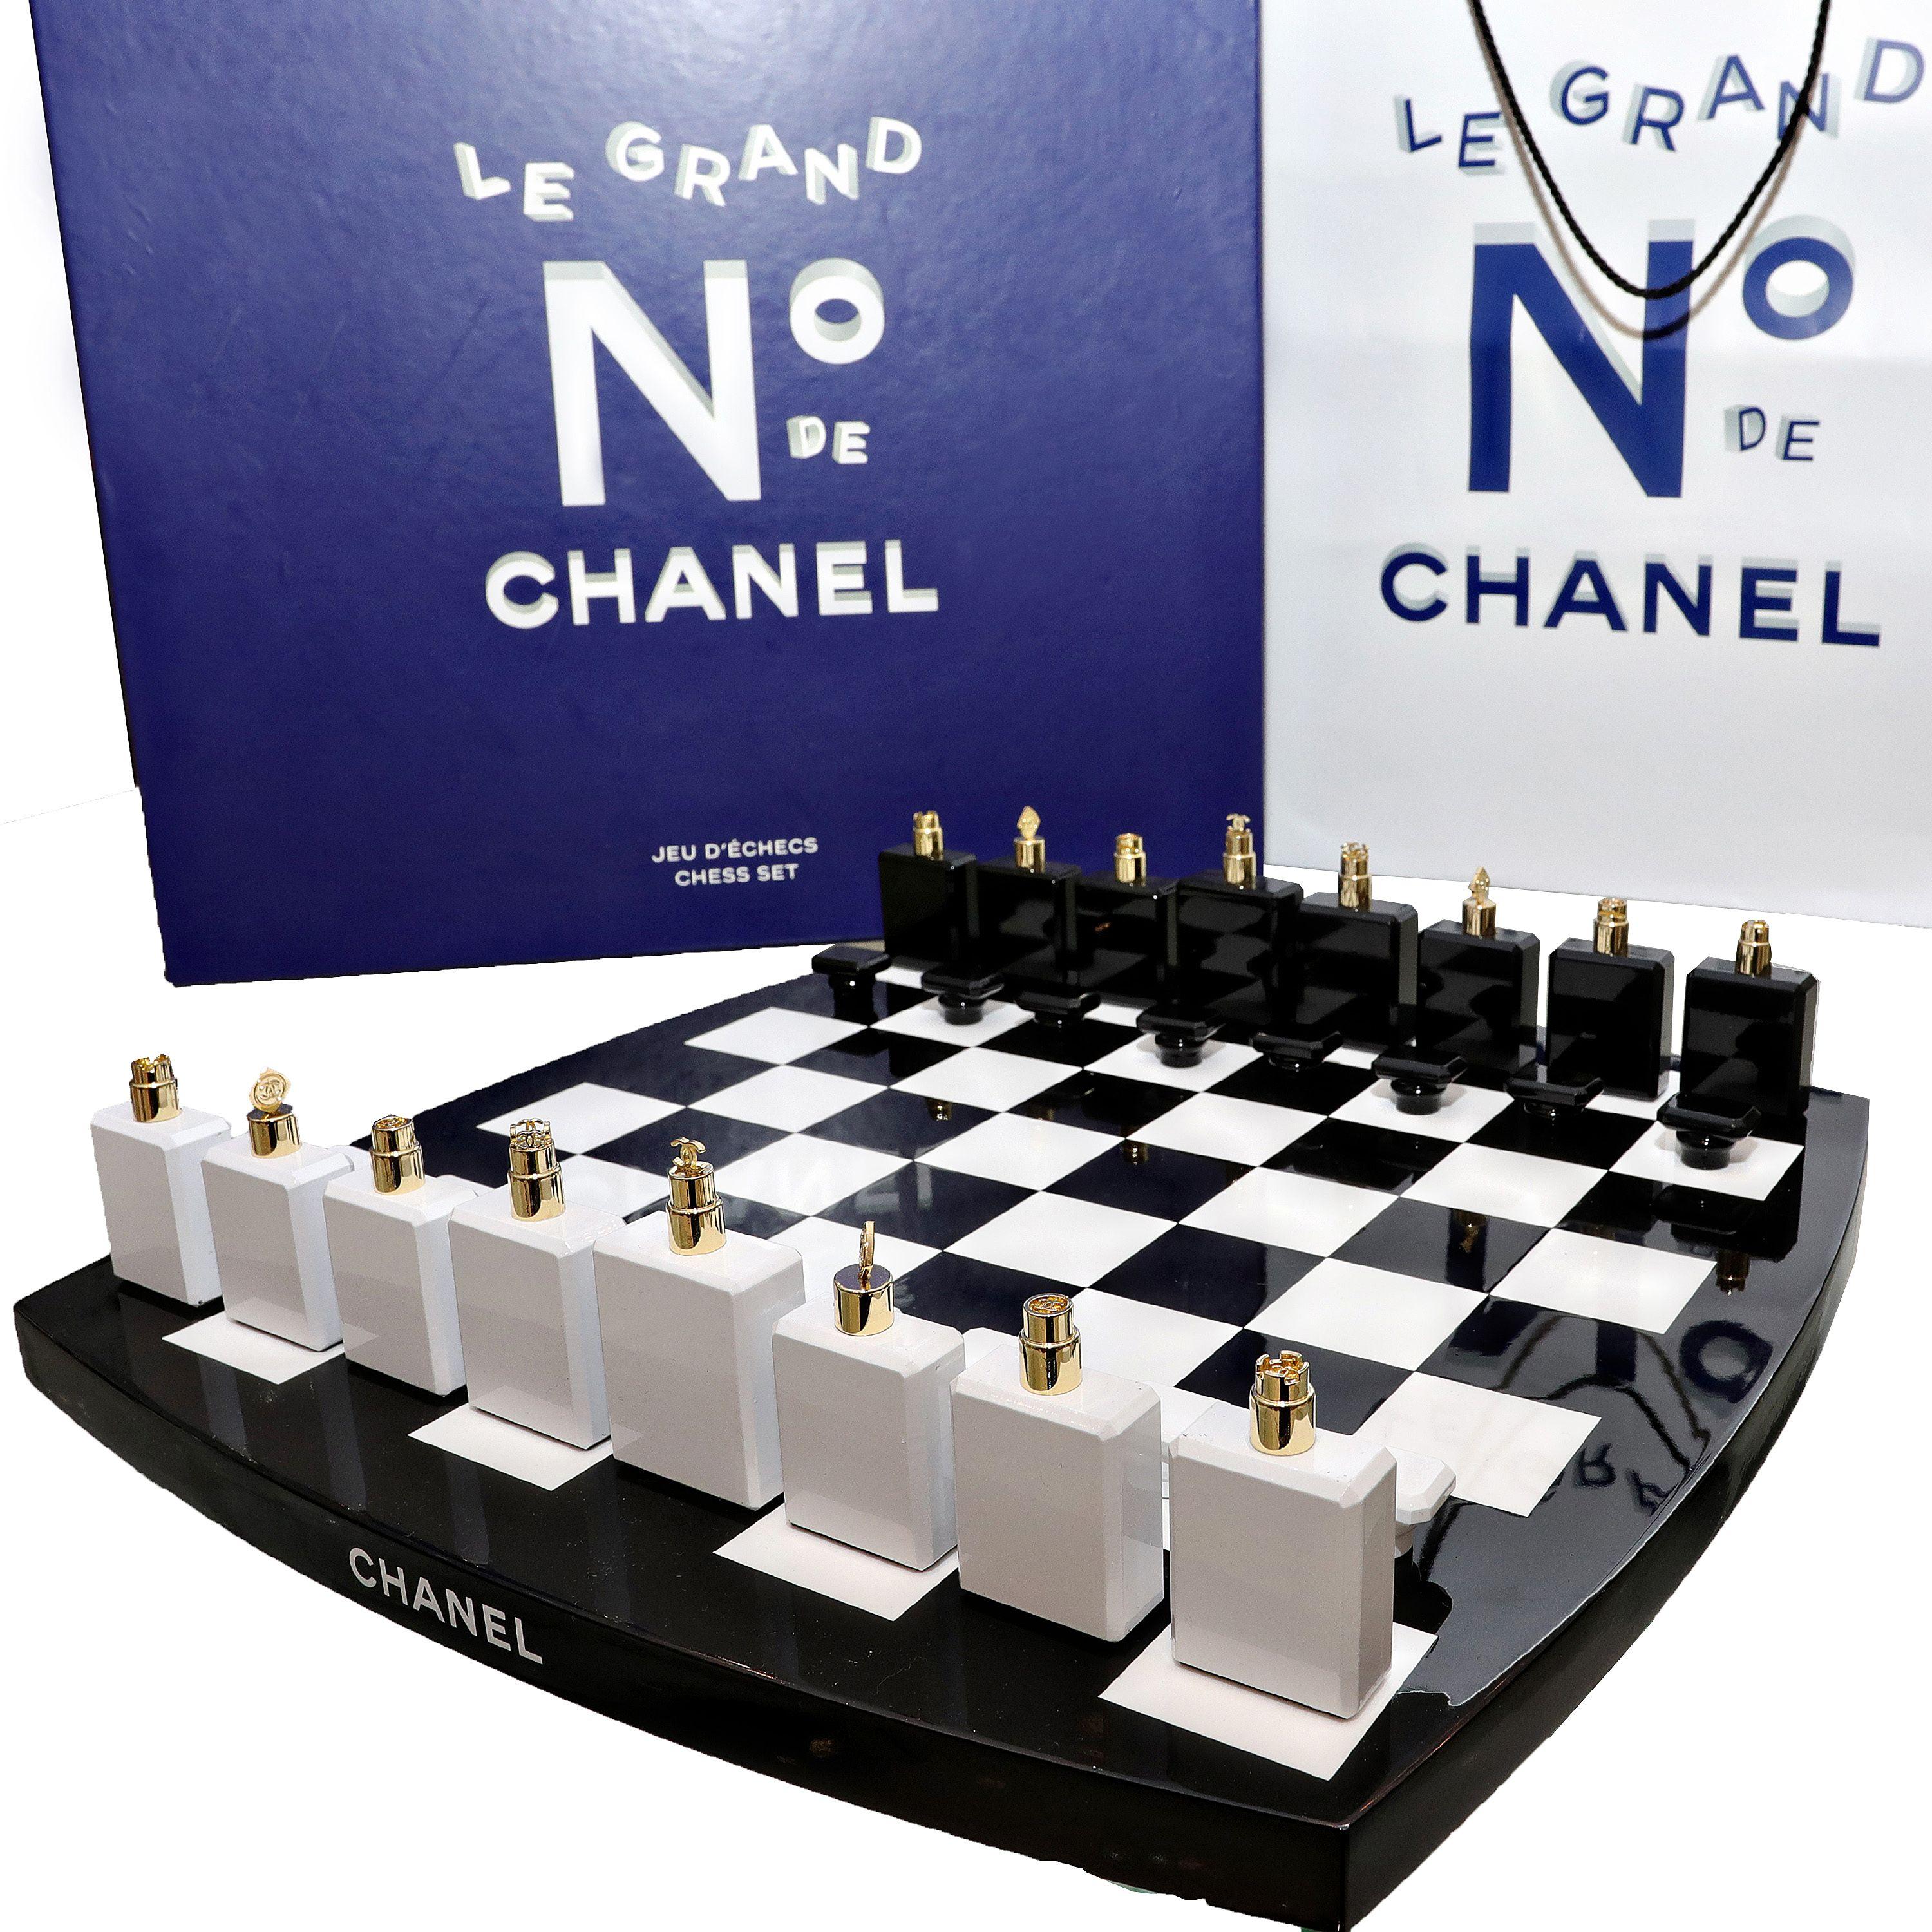 Dieses authentische Chanel Limited Edition Chess Set ist in tadellosem Zustand.  Ein Muss für jede Collection'S.  Schwarz und weiß lackiertes Schachbrett mit Chanel No 5 Parfümflaschen als Schachfiguren.  Die Aufsätze auf jeder 